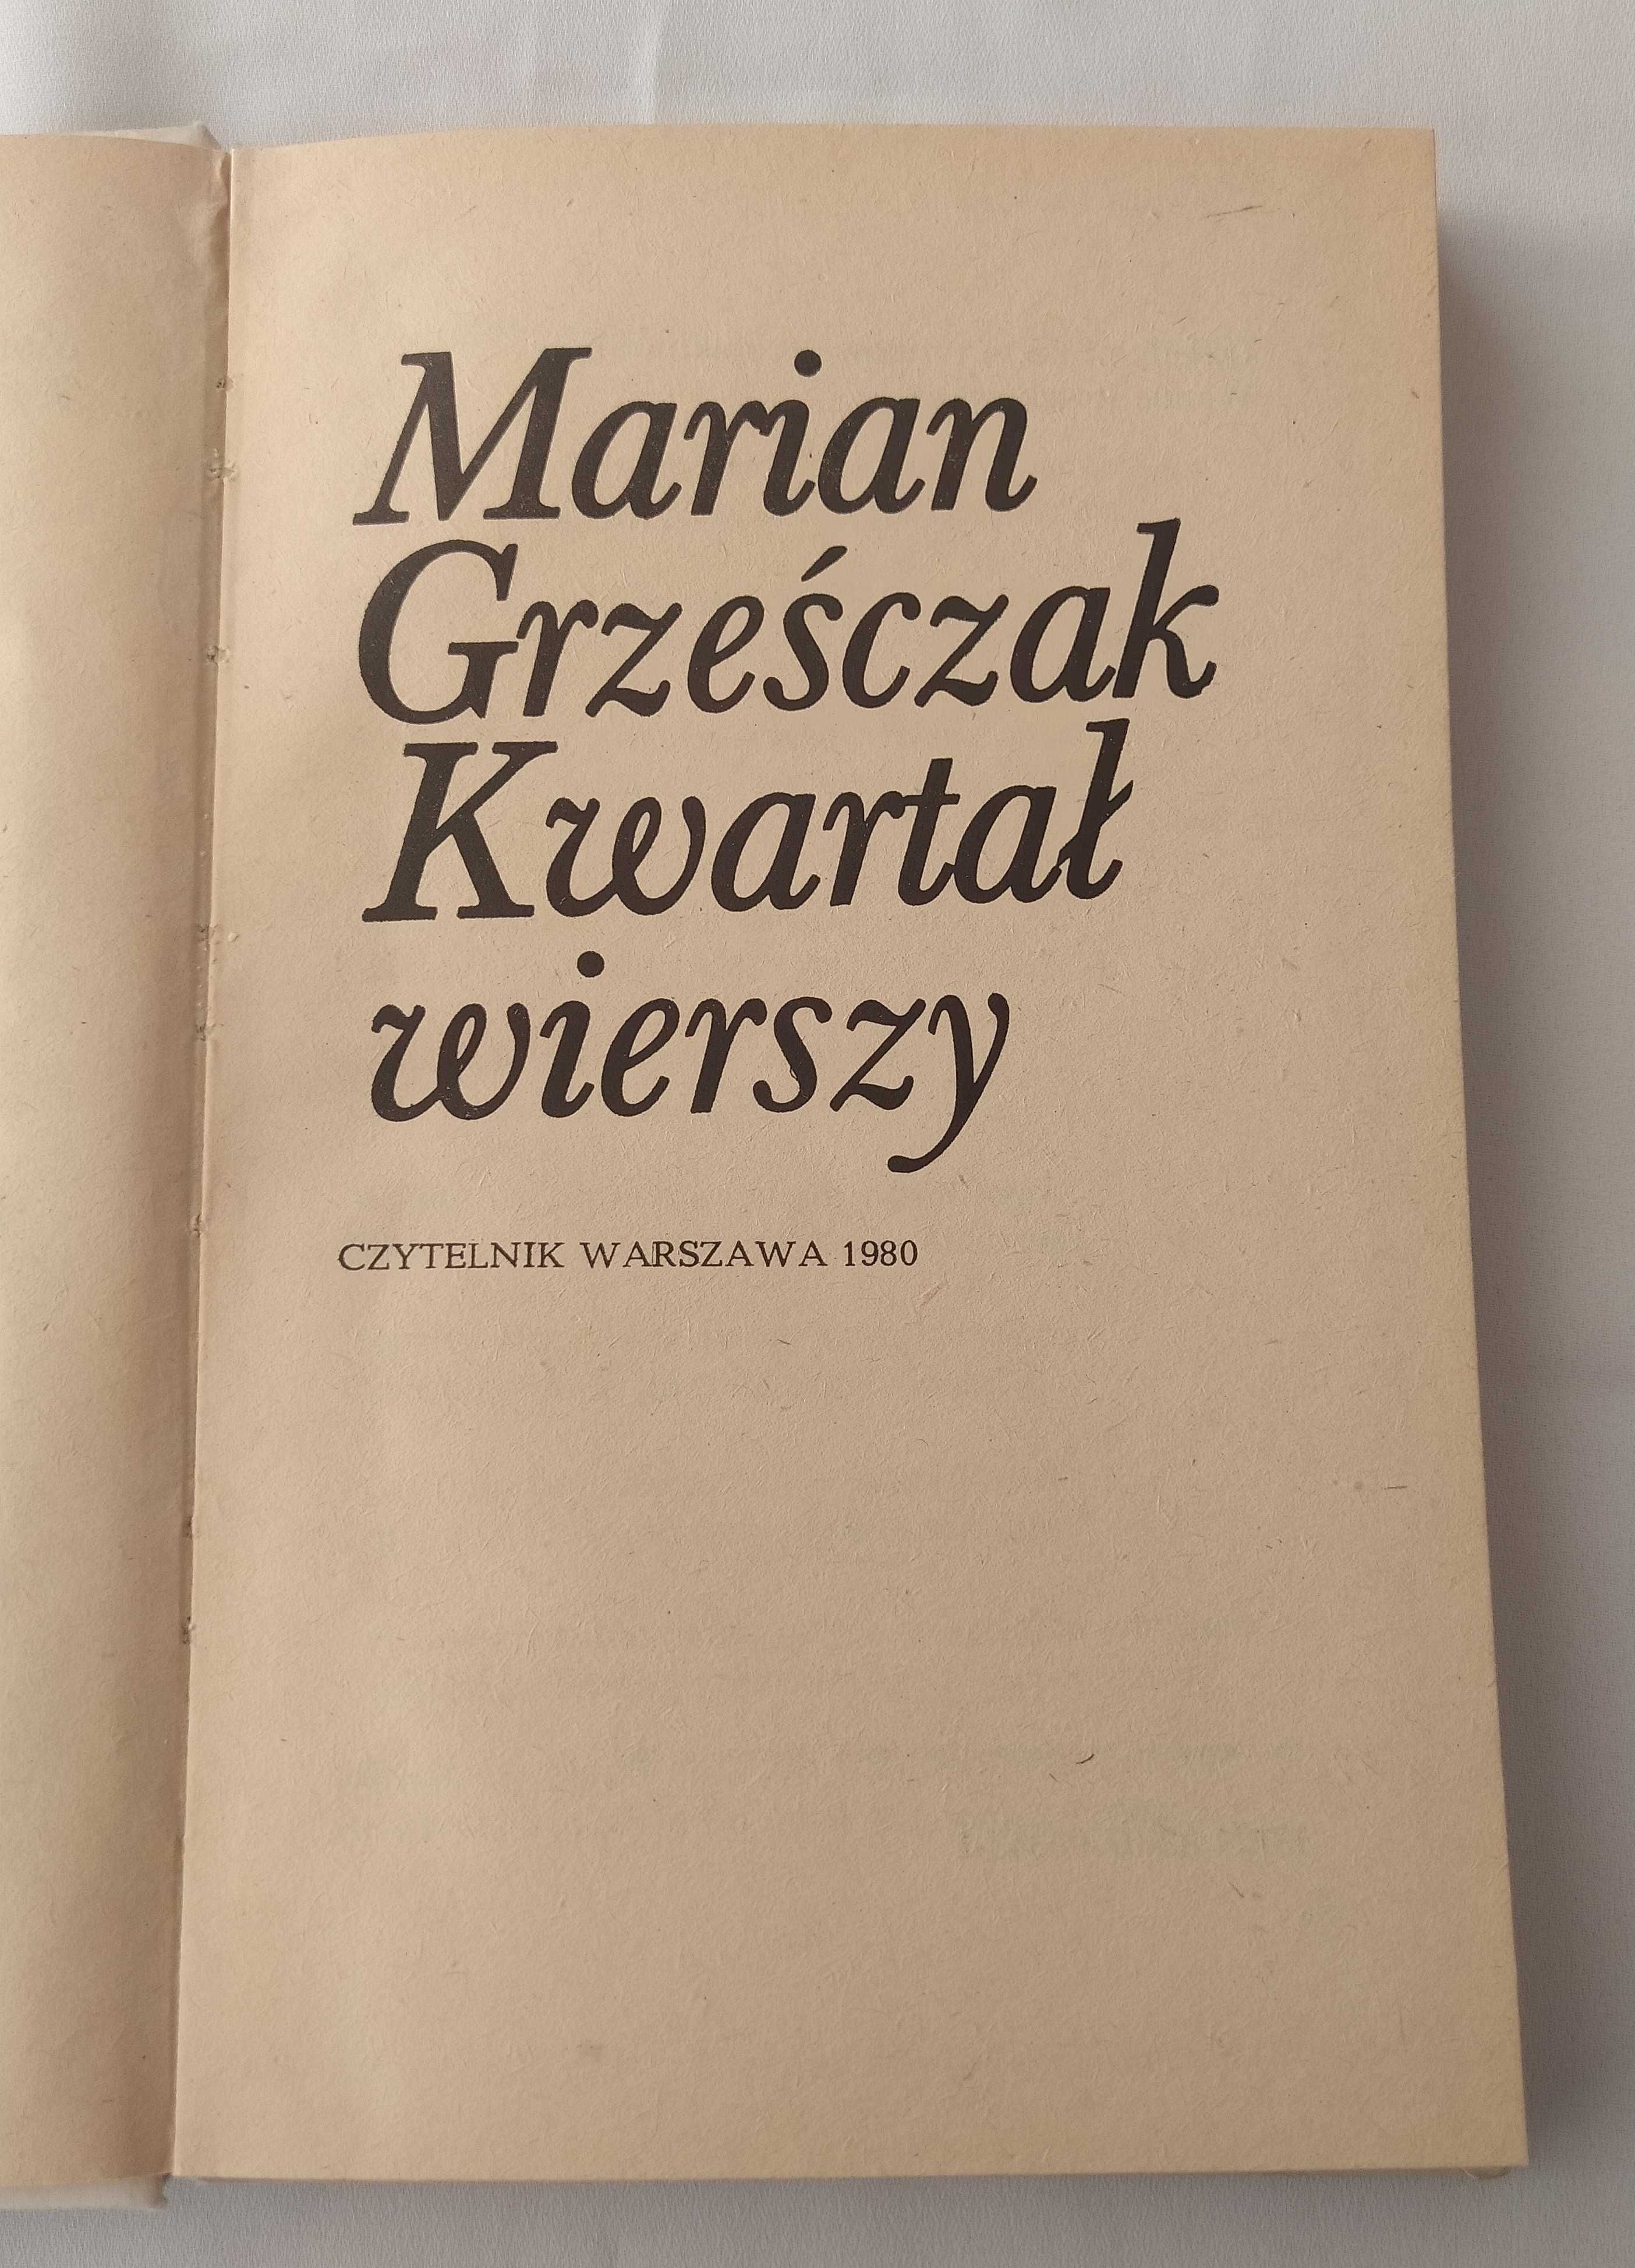 KWARTAŁ WIERSZY – Marian Grześczak